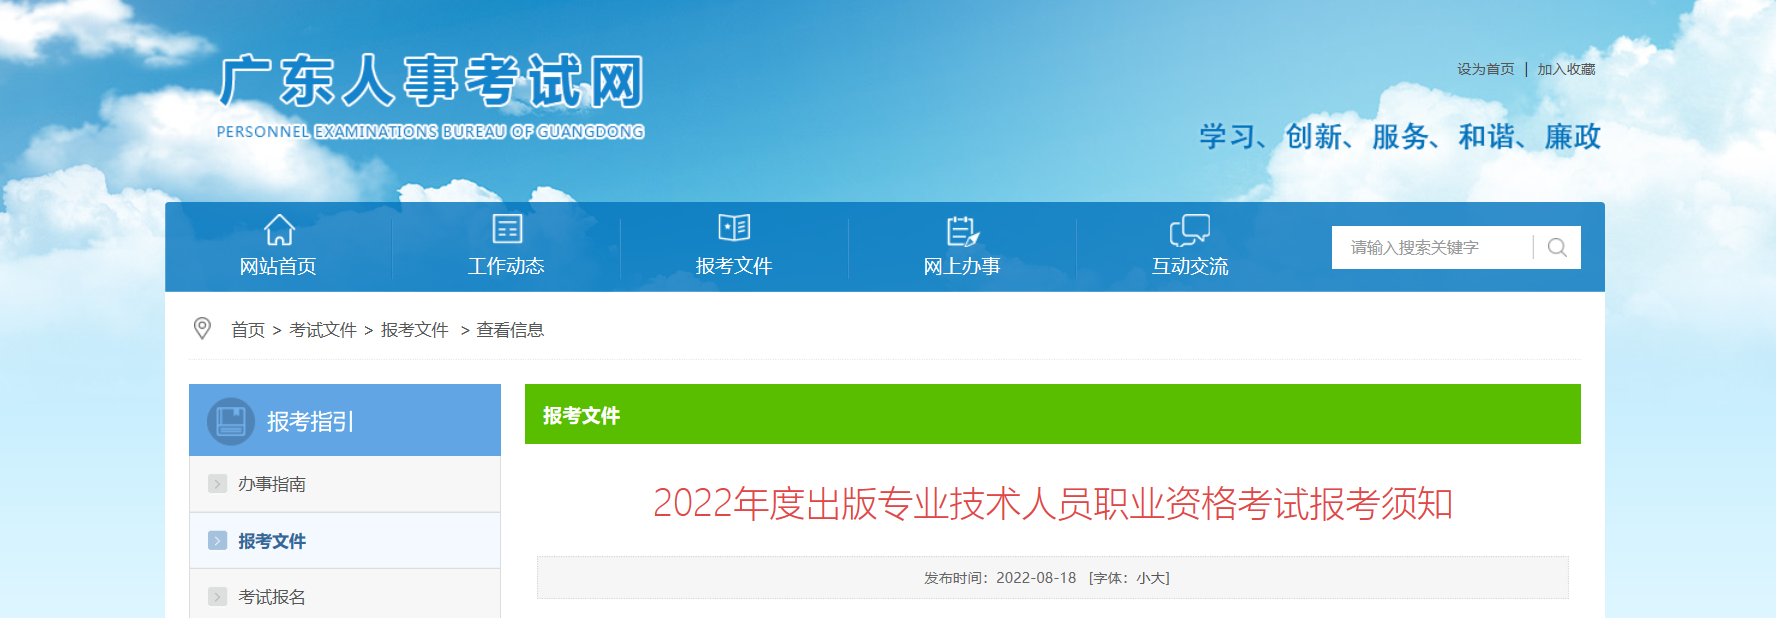 2022年广东出版专业技术人员职业资格考试报名时间、条件及入口【8月22日-8月31日】